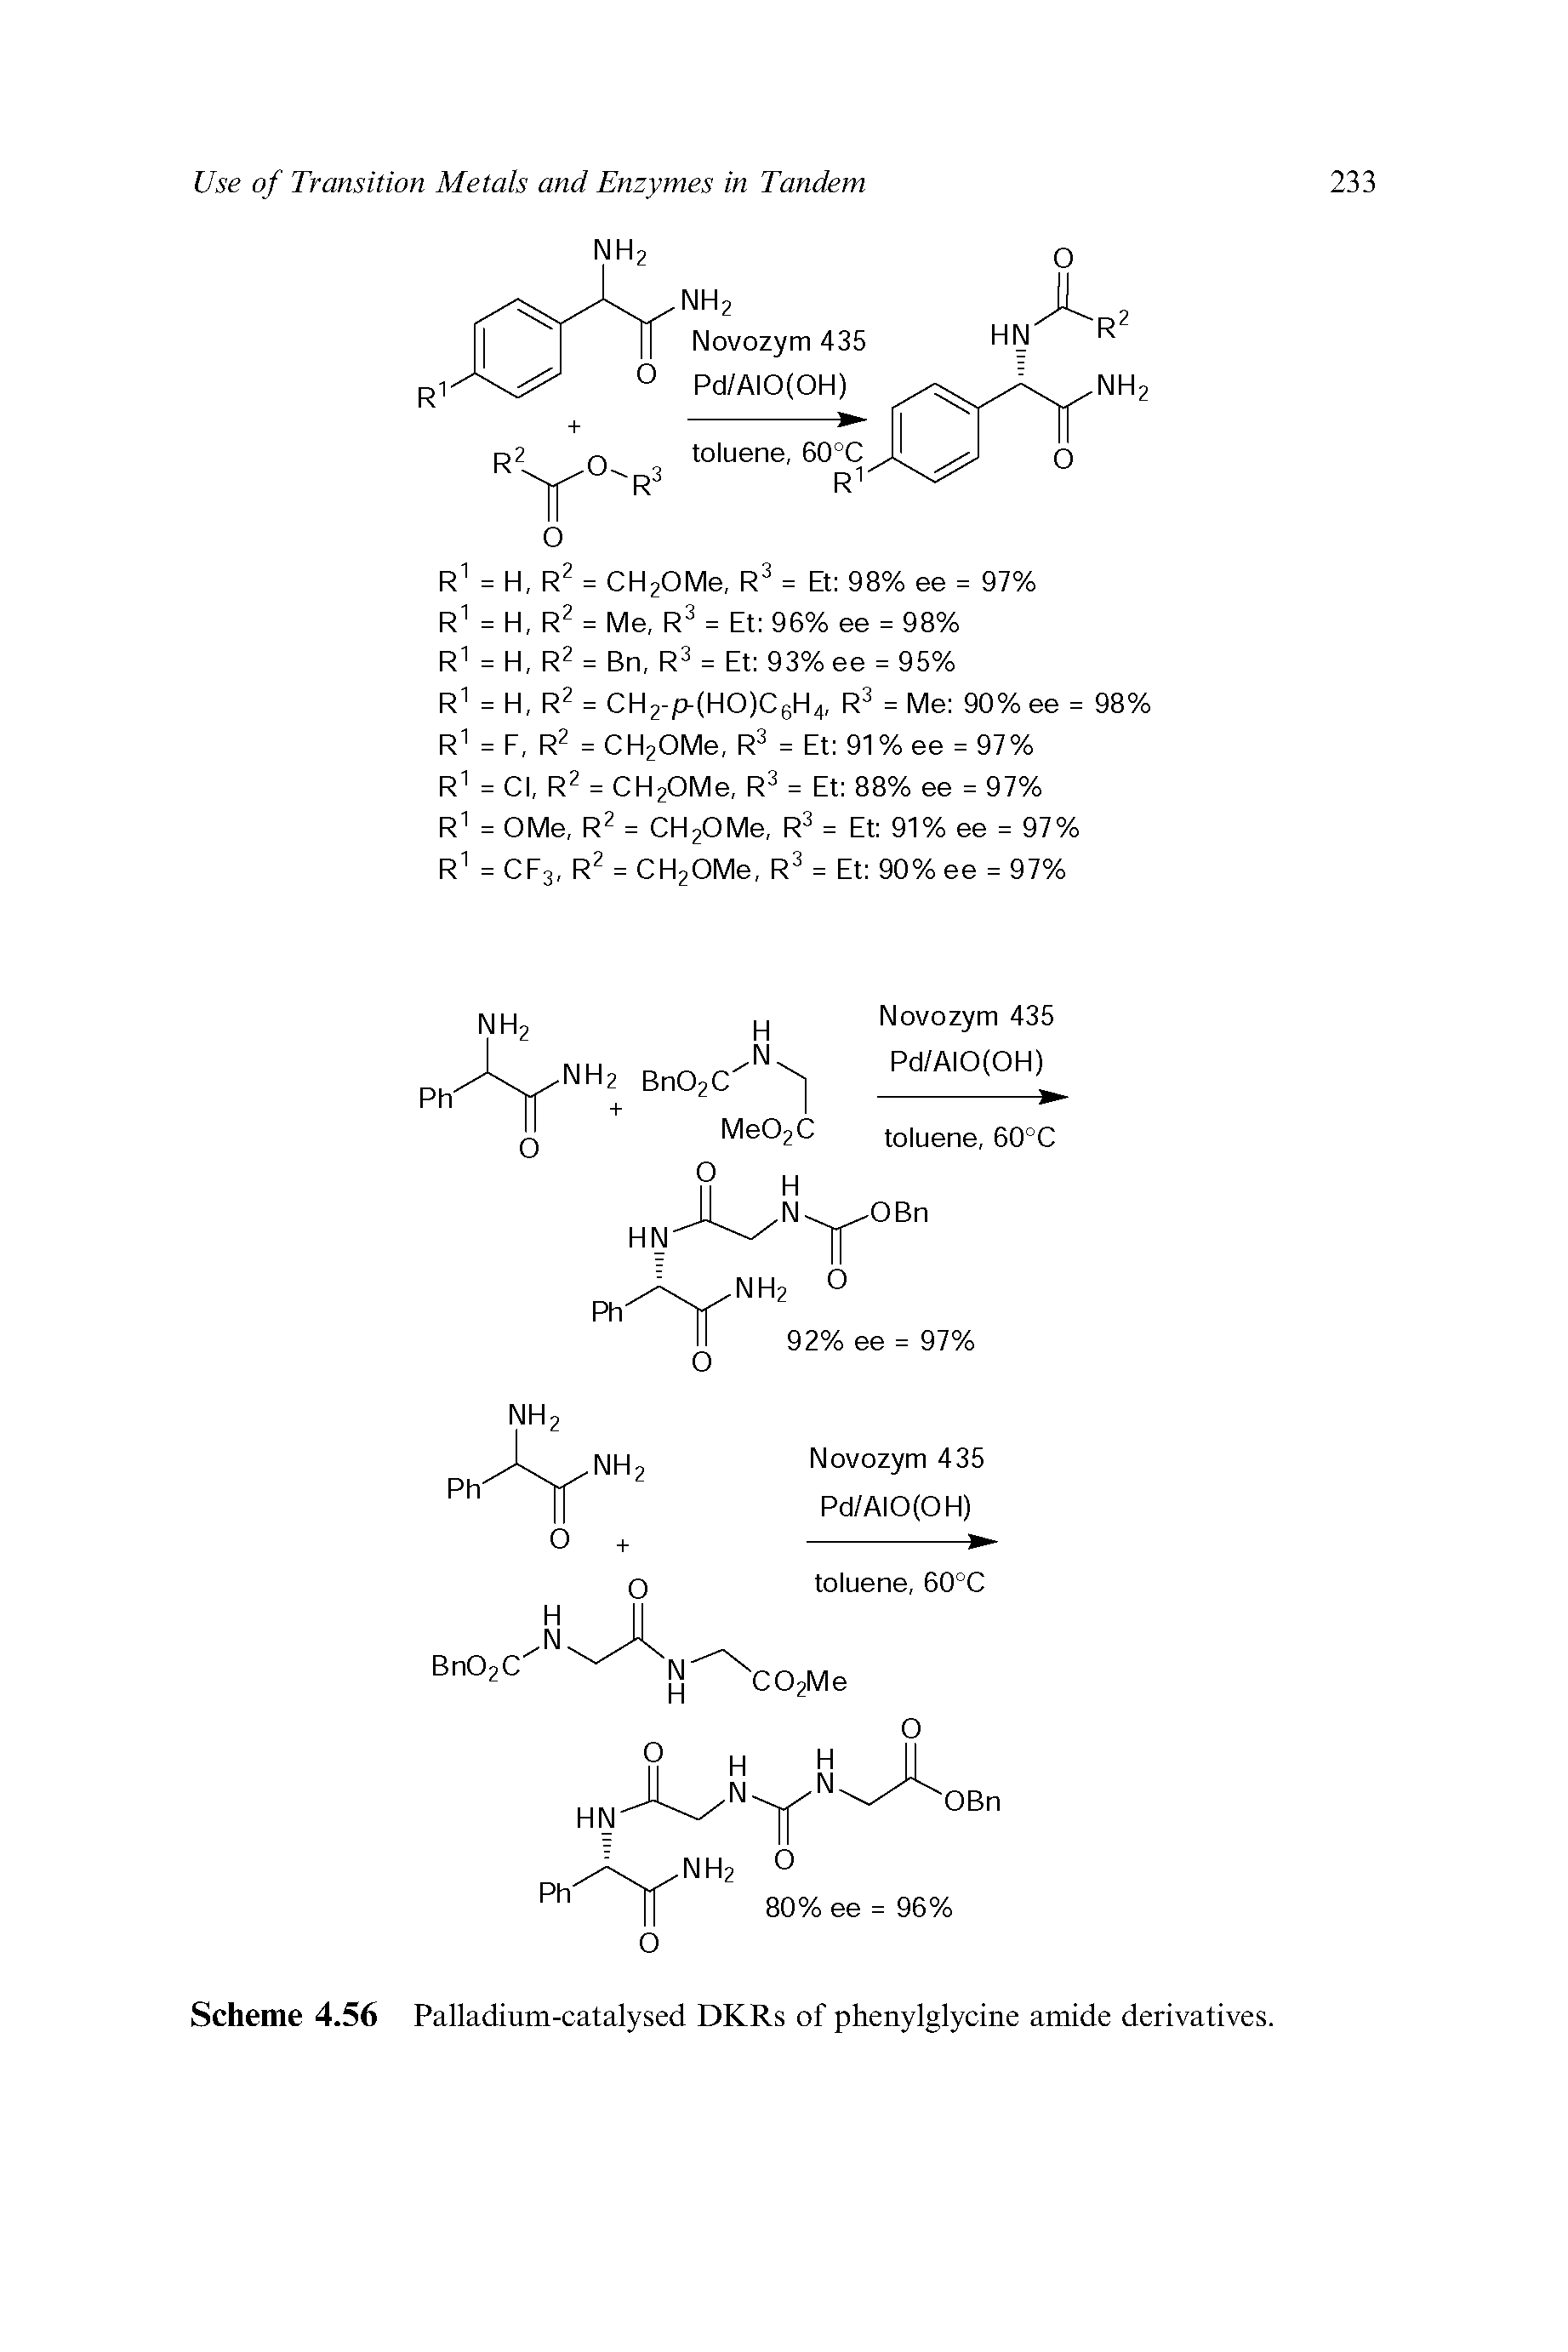 Scheme 4.56 Palladium-catalysed DKRs of phenylglycine amide derivatives.